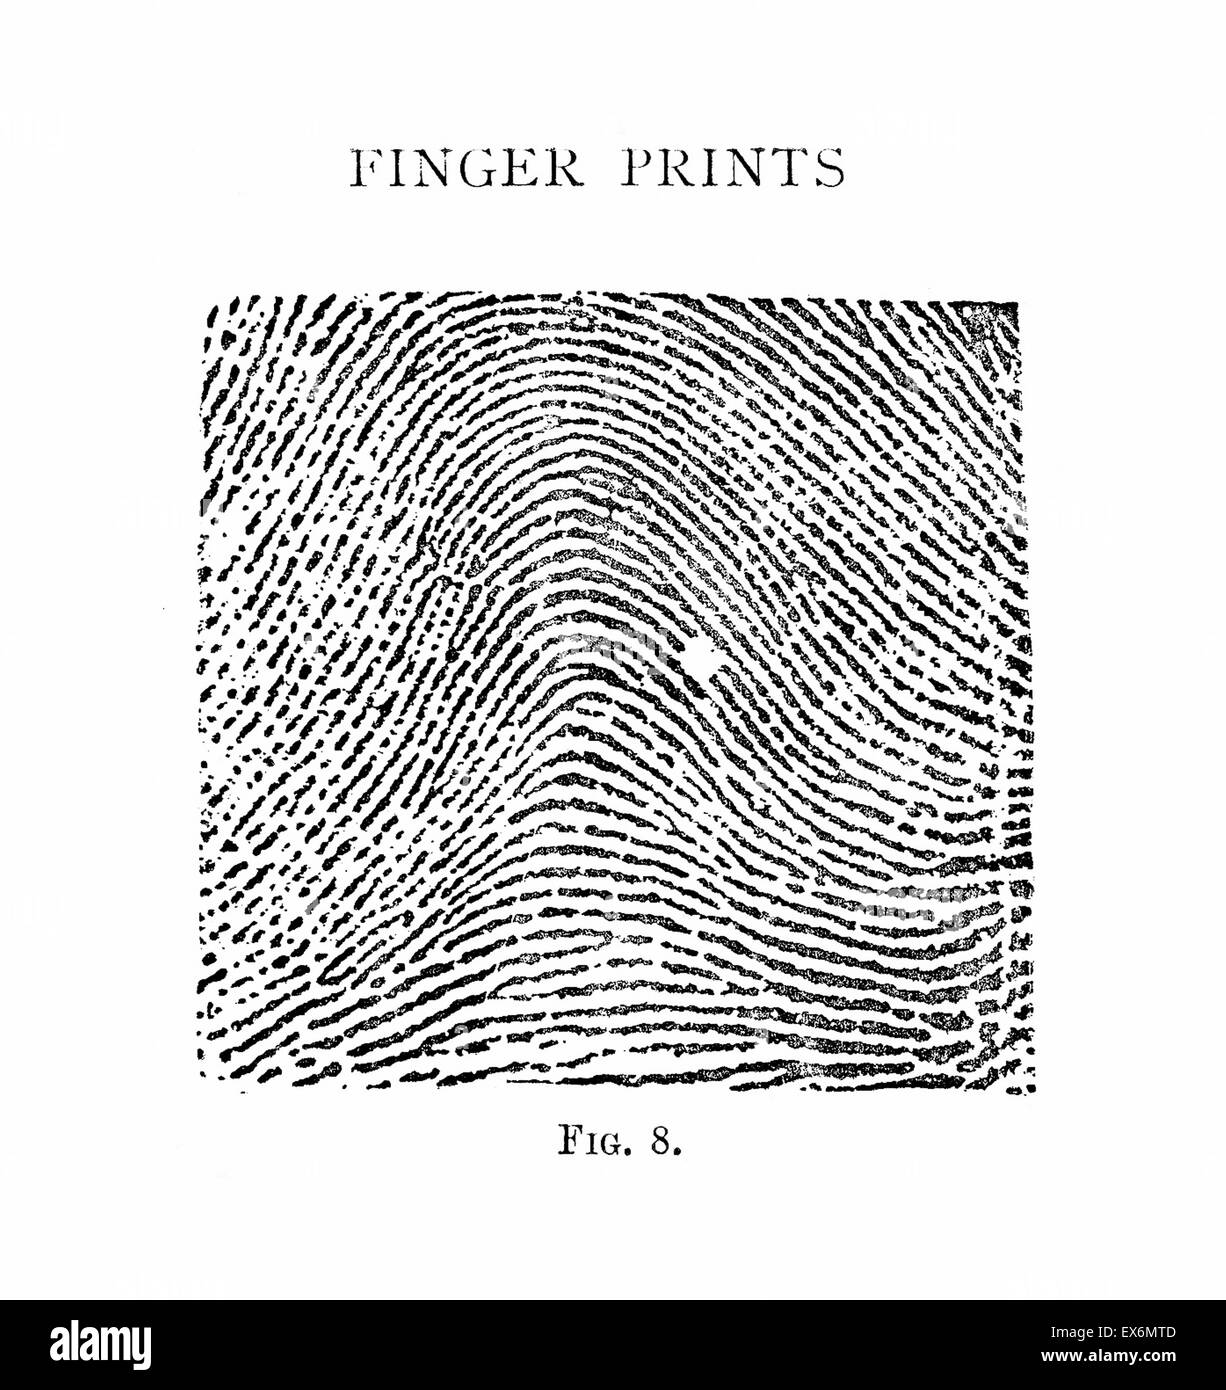 Typischen Bogen Muster teilt 1900 die Henry-Klassifizierungssystem Fingerabdruck Datensätze in Gruppen basierend auf Mustertypen. Das System macht es möglich, große Anzahl von Fingerabdruck-Datensätzen zu suchen, indem Sie klassifizieren die Drucke je nachdem, ob sie h Stockfoto